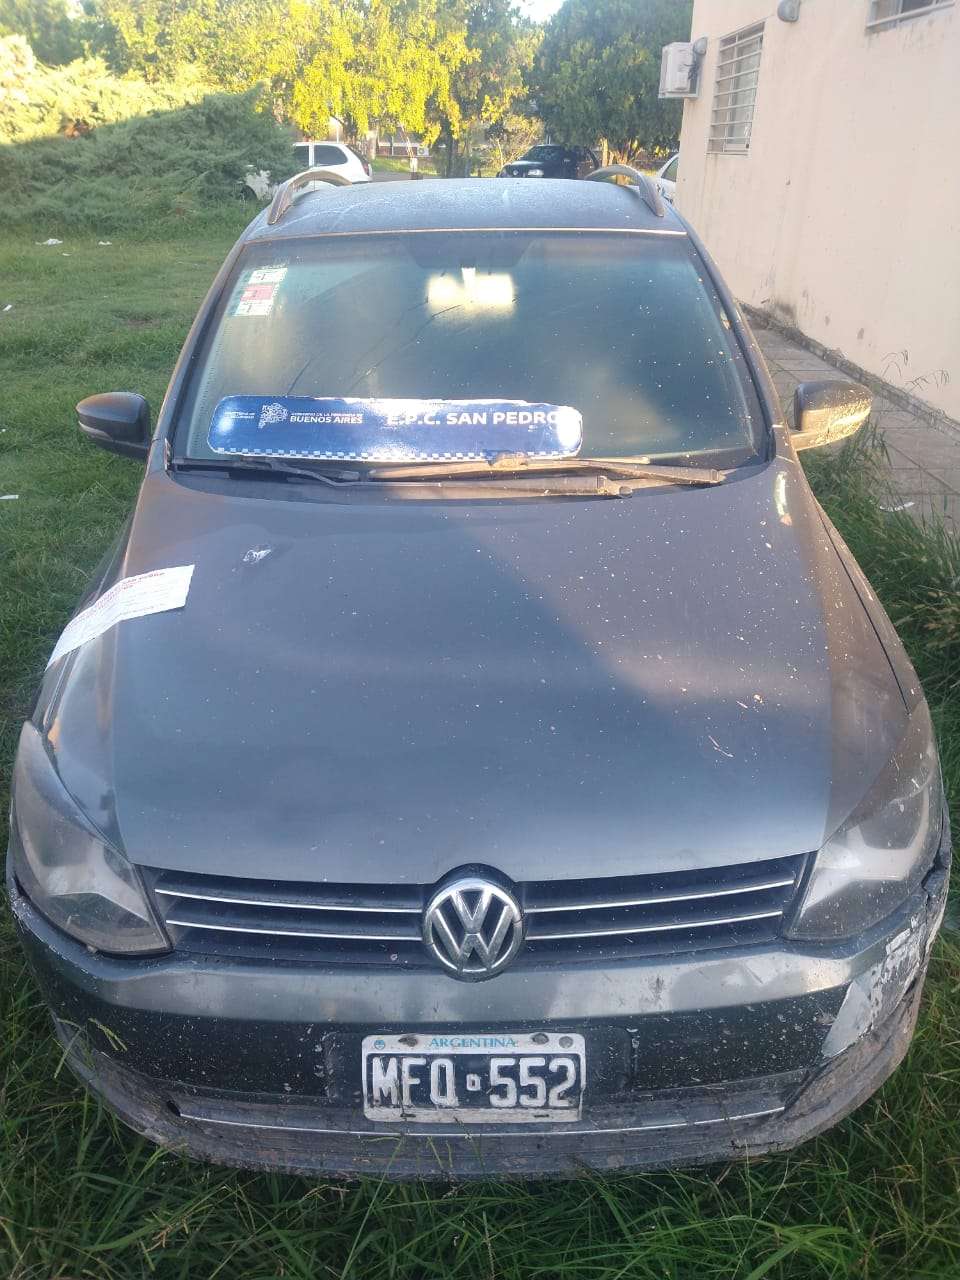 Volkswagen Suran secuestrado a Crespien